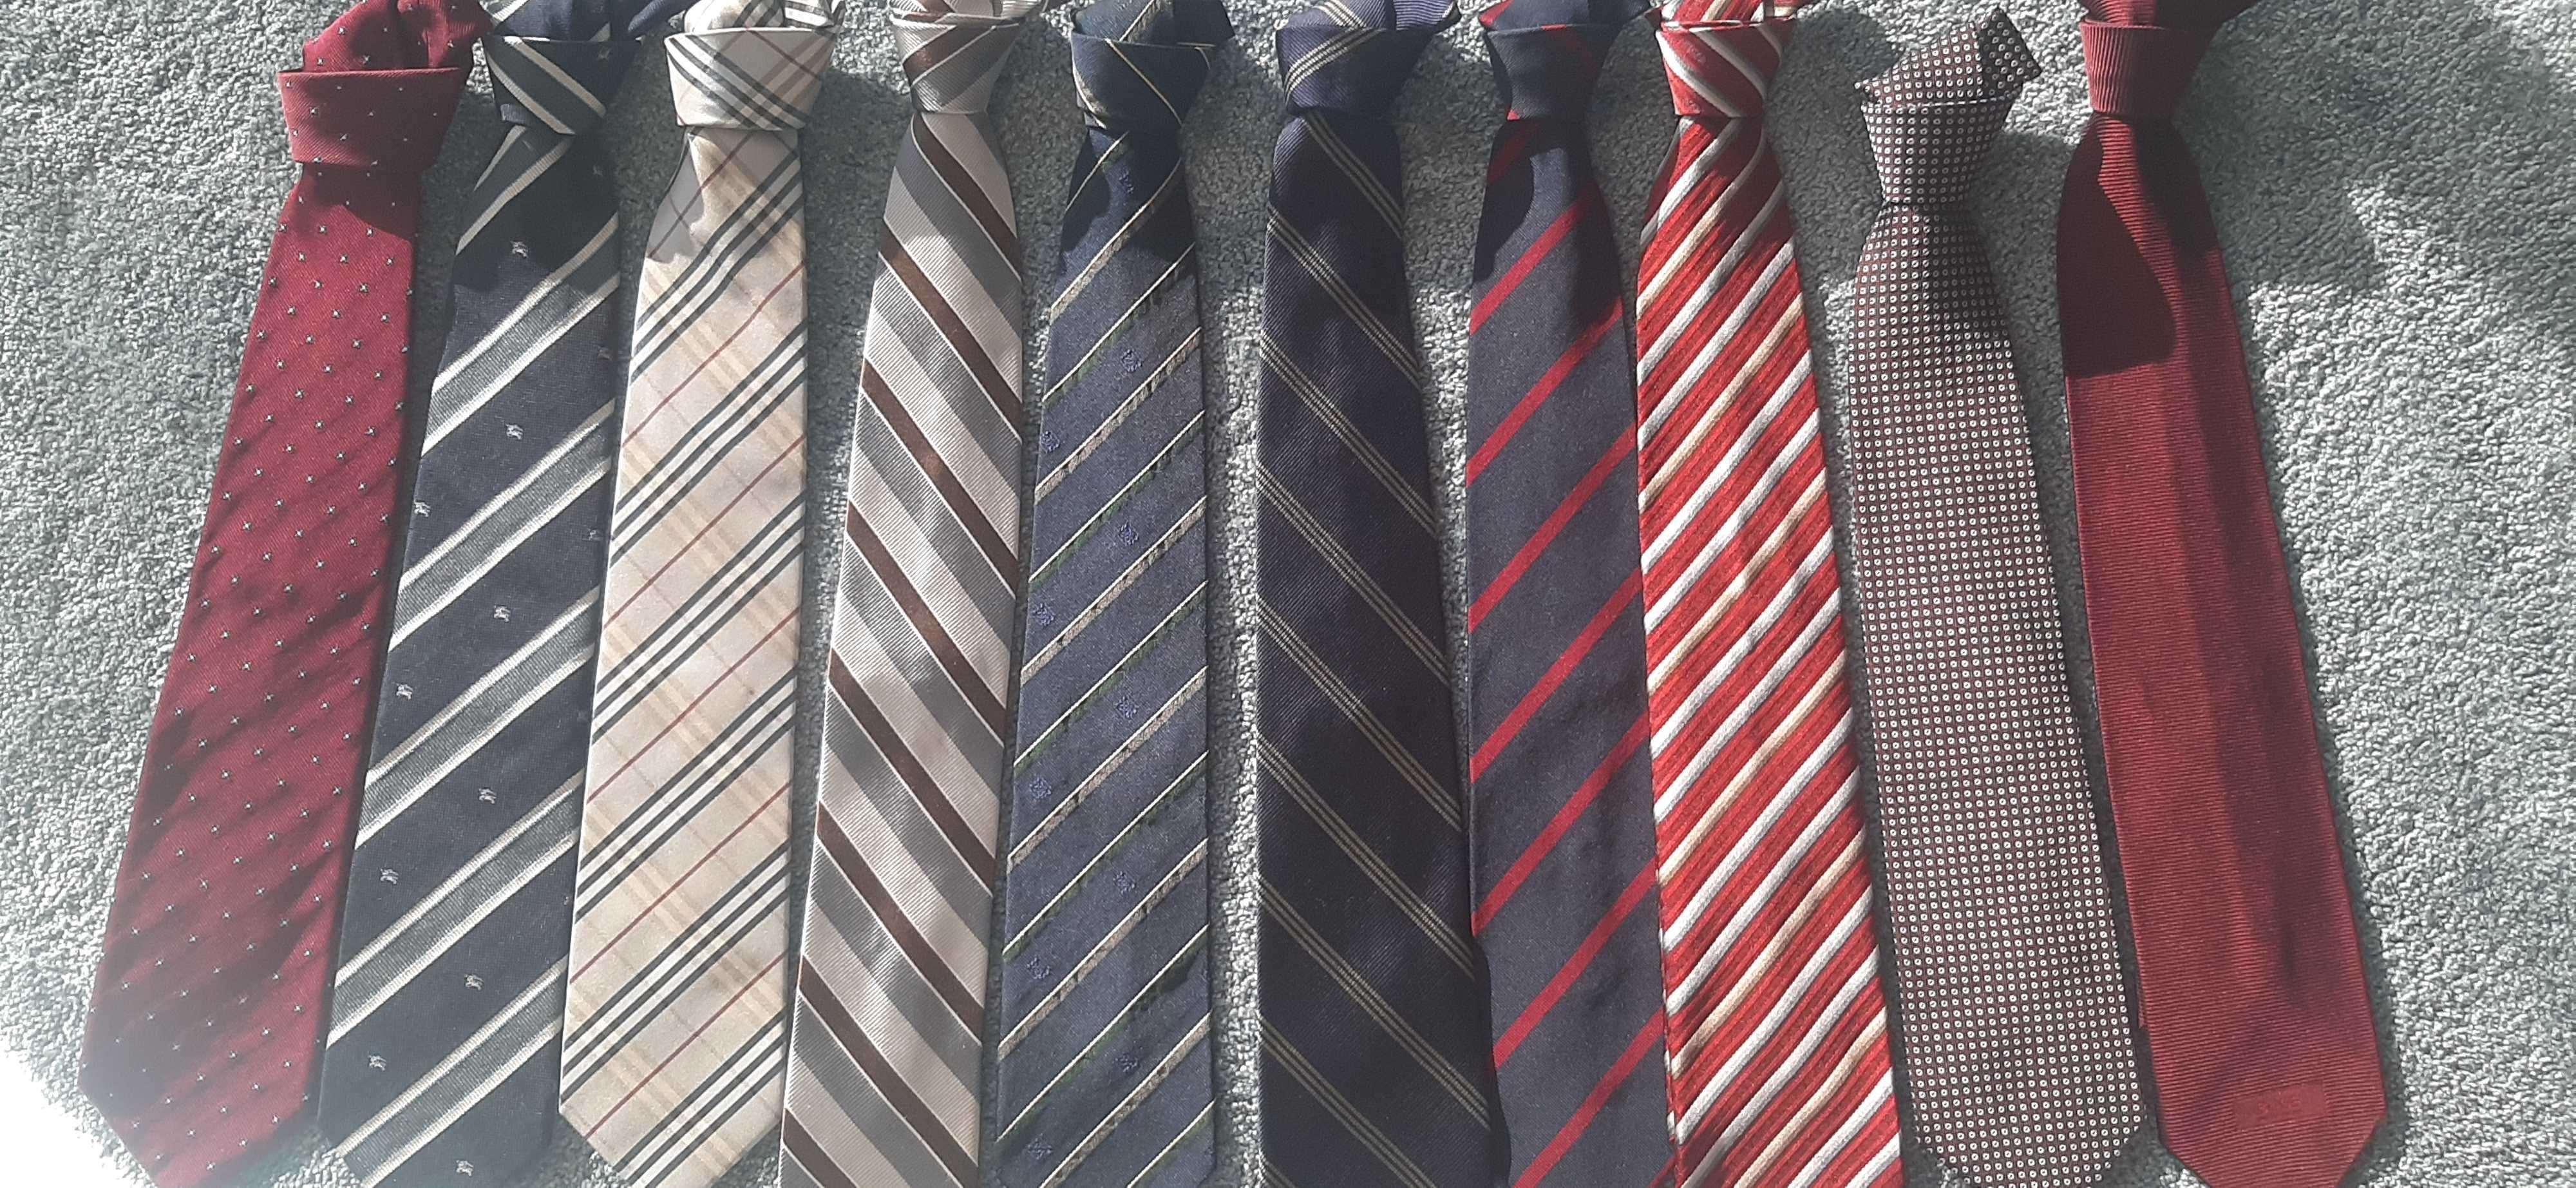 Oportunidade - Conjunto de gravatas 100% seda natural * novas *